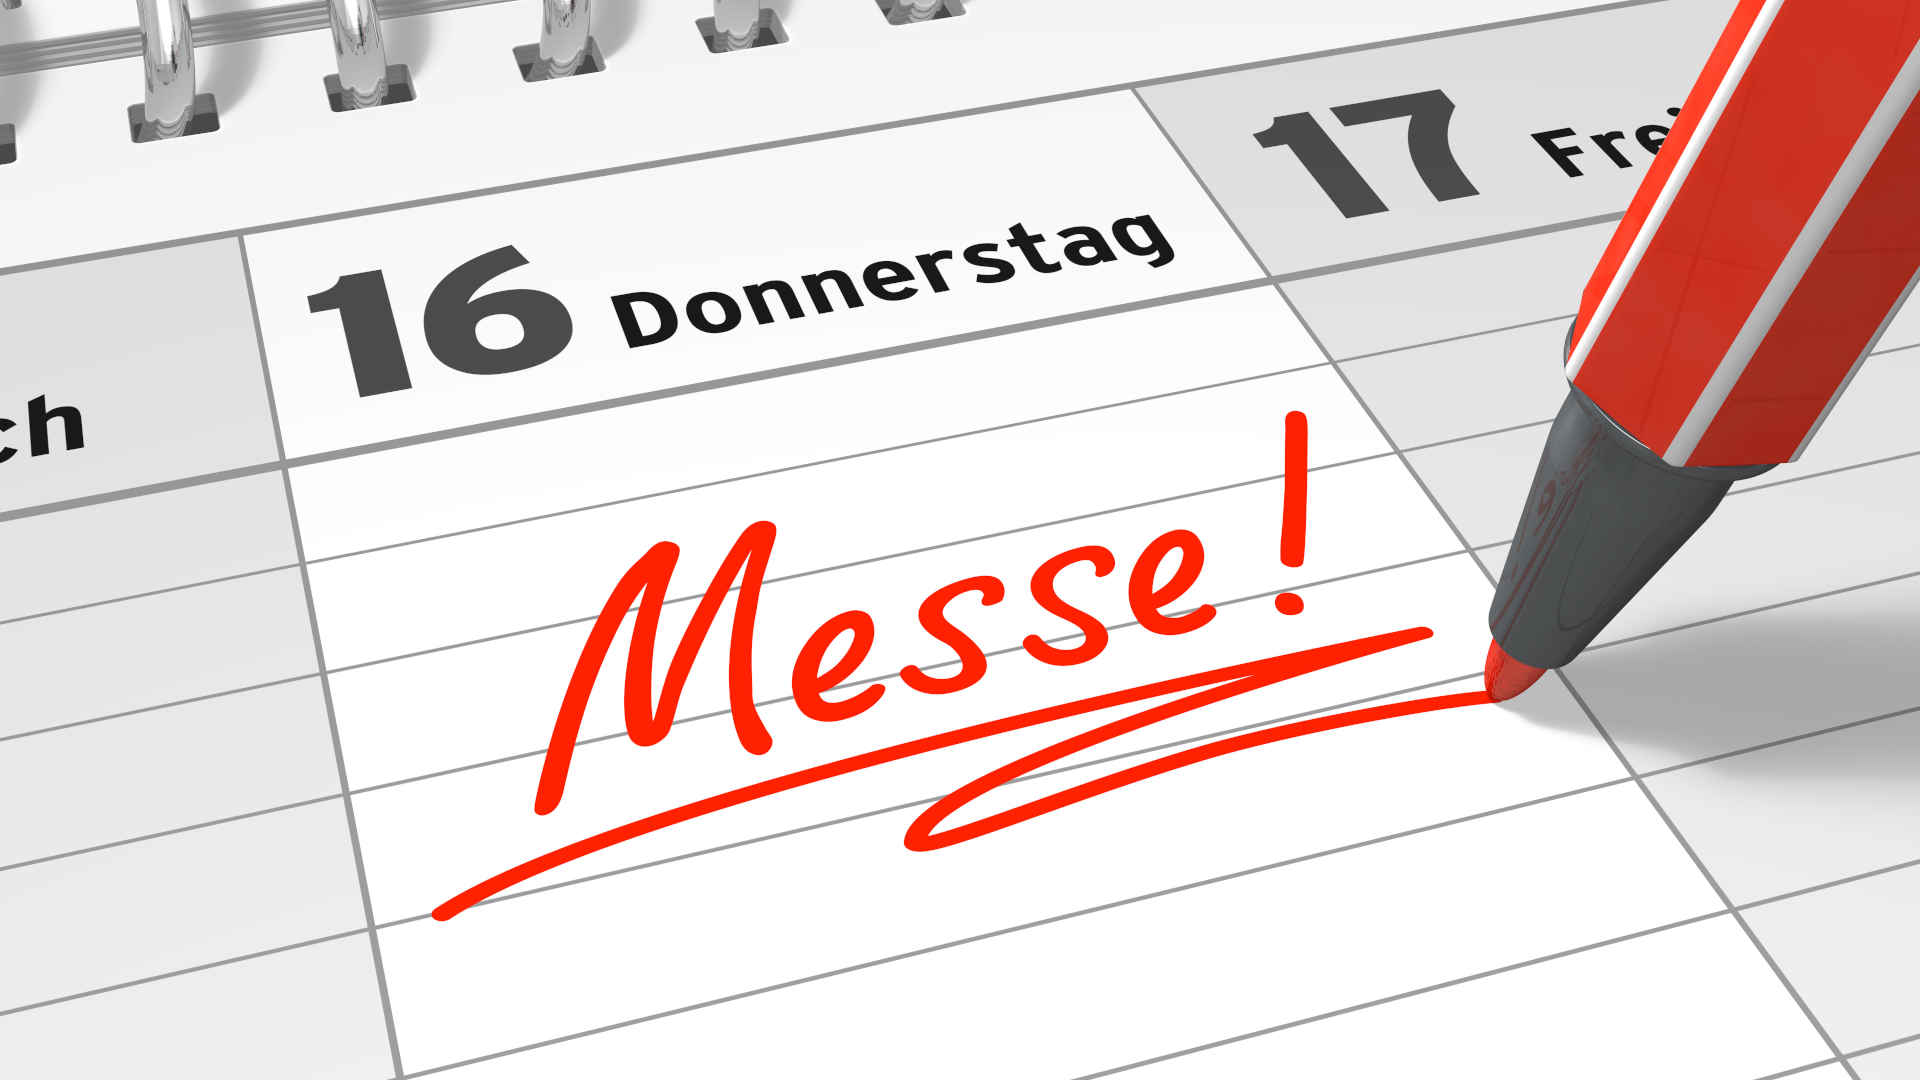 In einen Kalender wird mit einem roten Filzstift das Wort "Messe" eingetragen.